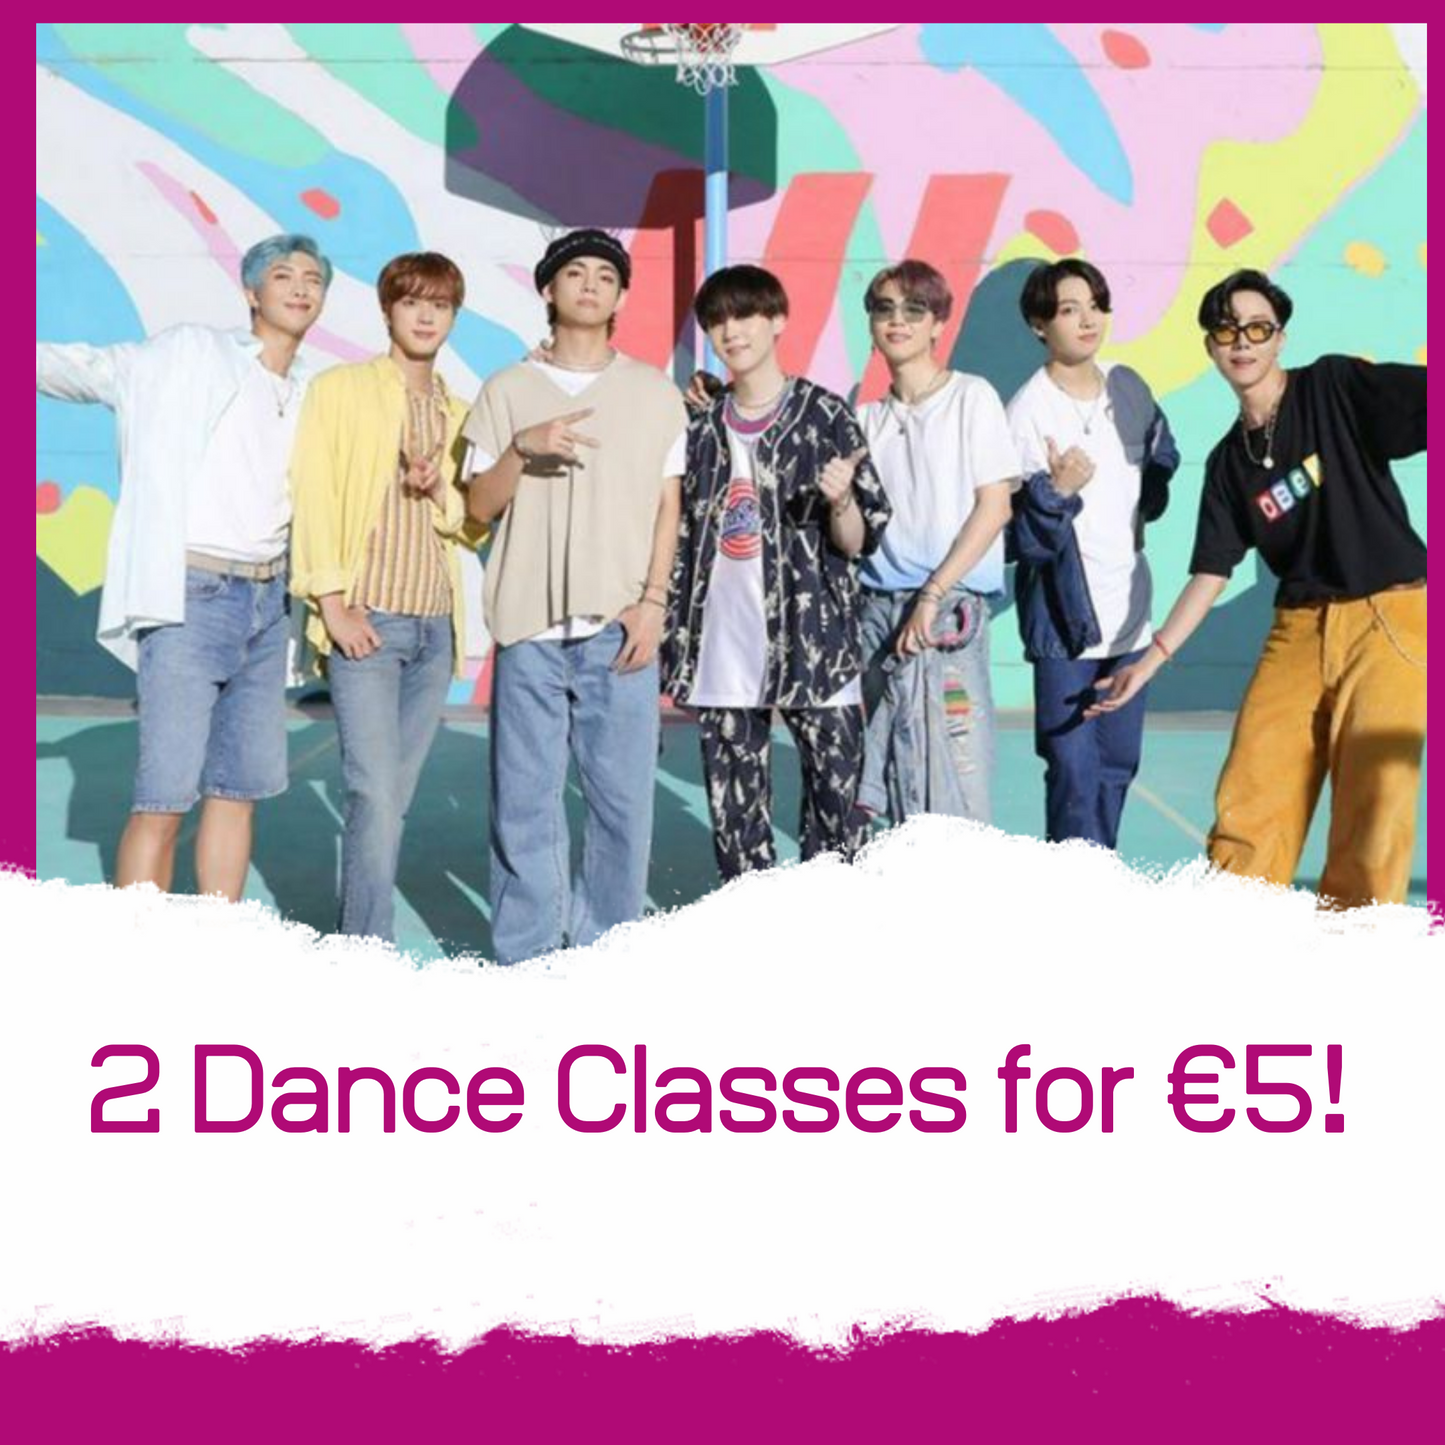 Kpop Dance class - SD-style-shop